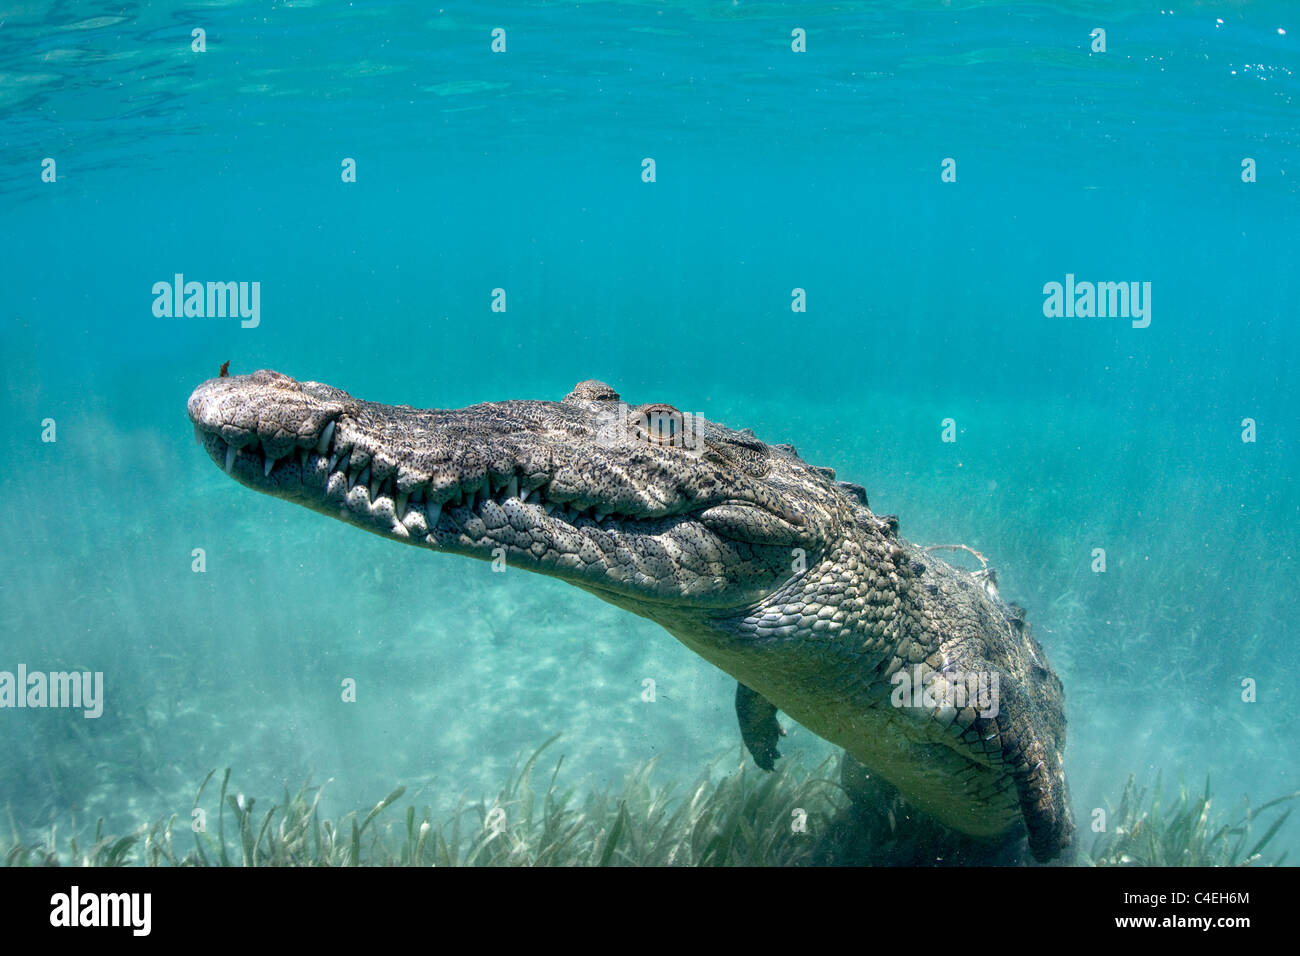 Un Crocodile cubain repose sous l'eau au large des côtes de Cuba. Banque D'Images